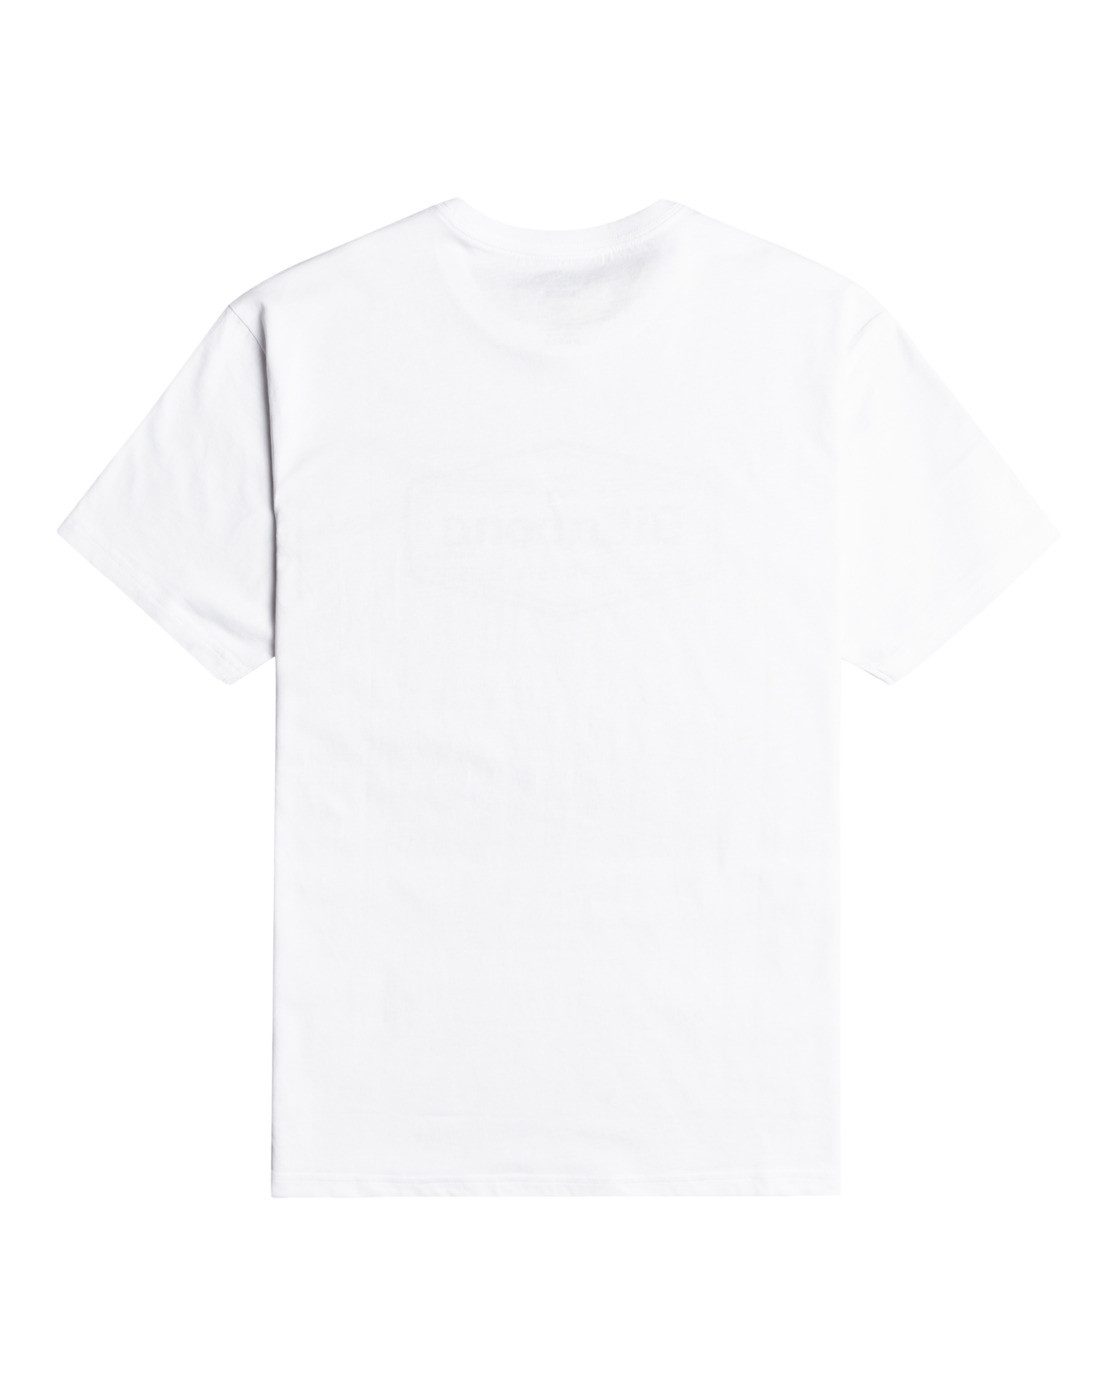 Billabong Trademark White T-Shirt